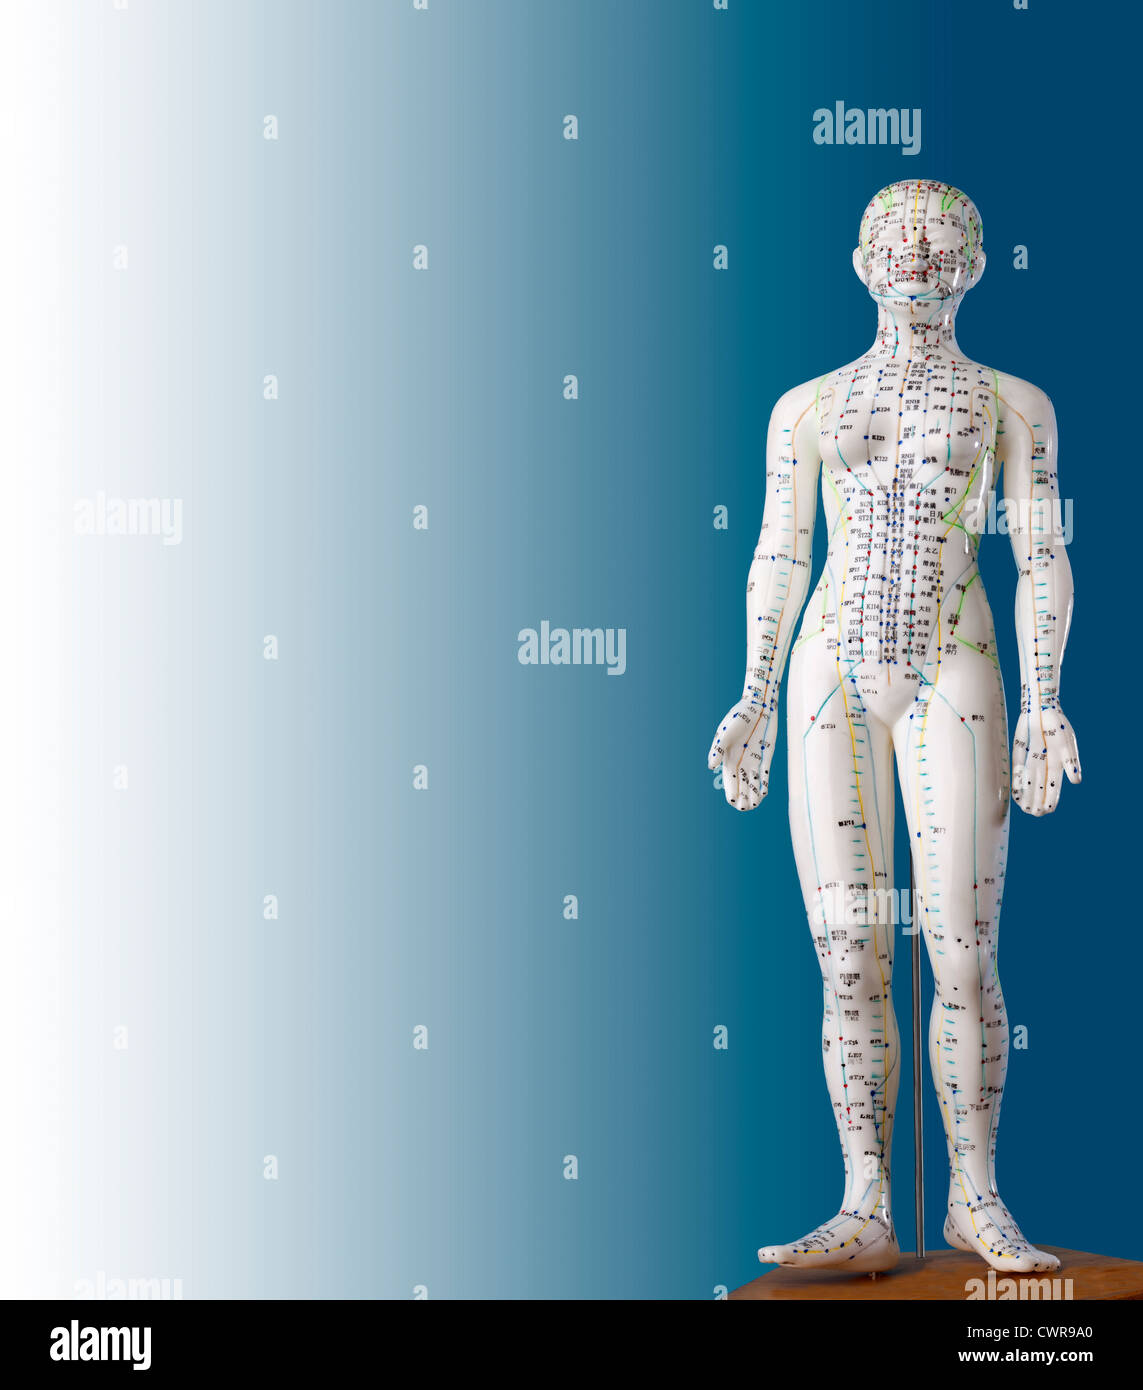 Un modèle féminin avec des points d'acuponcture, les caractères chinois sur les méridiens, la médecine traditionnelle chinoise Banque D'Images